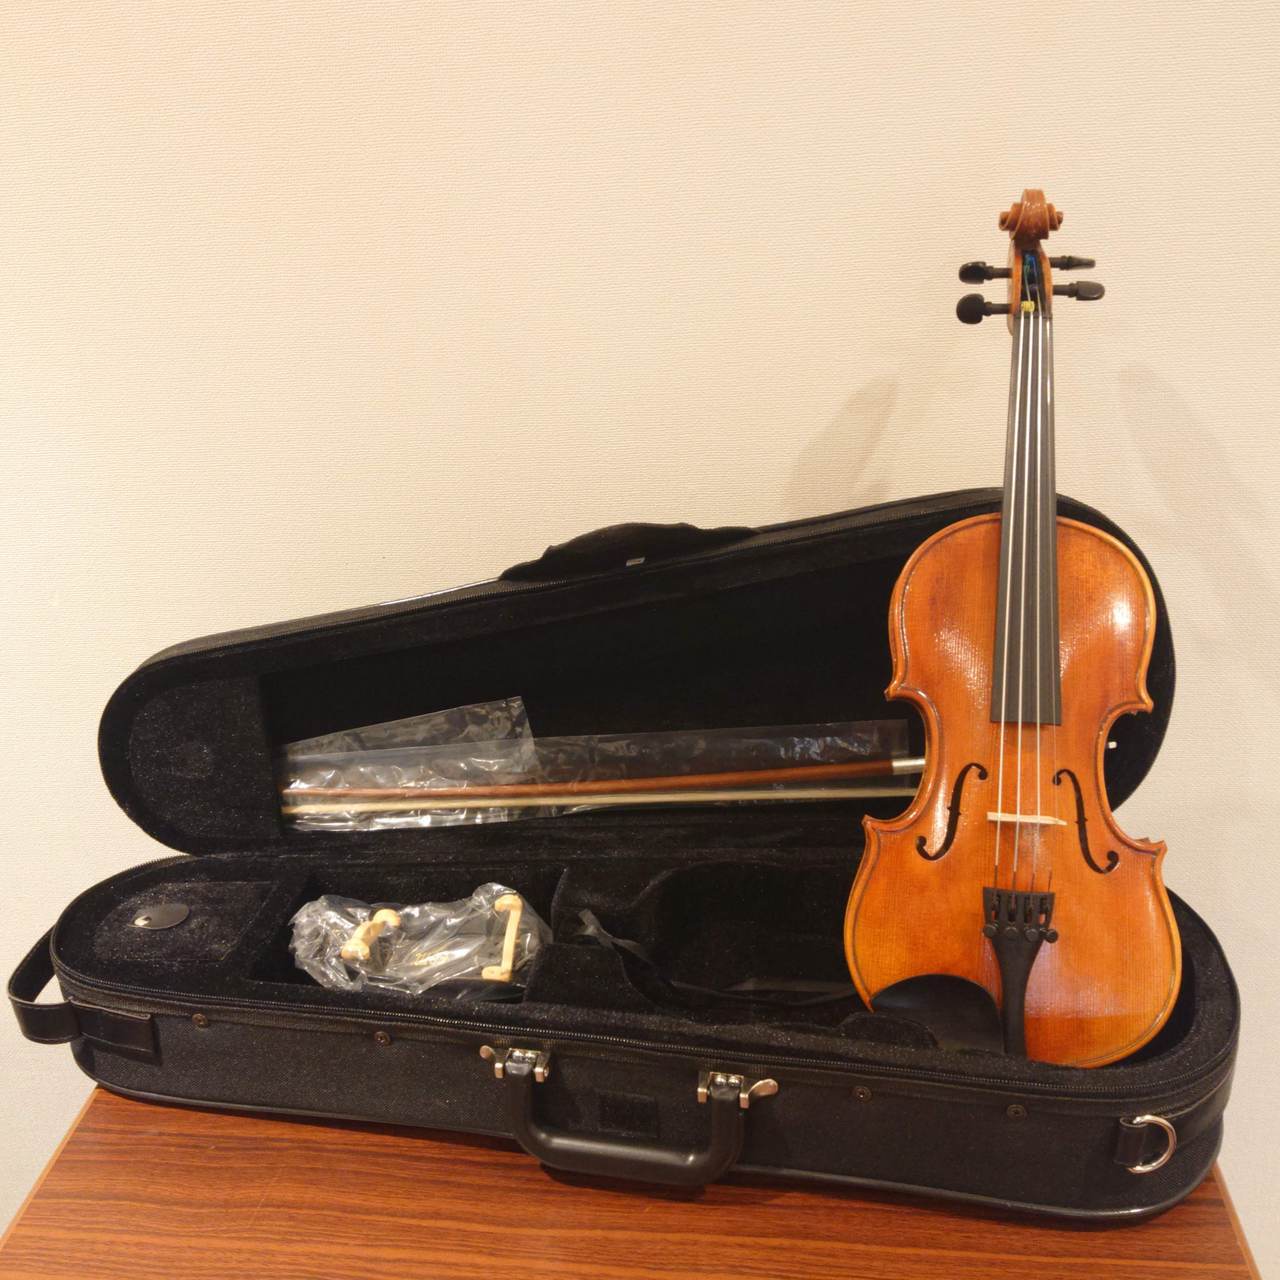 Nicolo Santi (ニコロ・サンティ)バイオリンセット NSN60S 1/16サイズ 